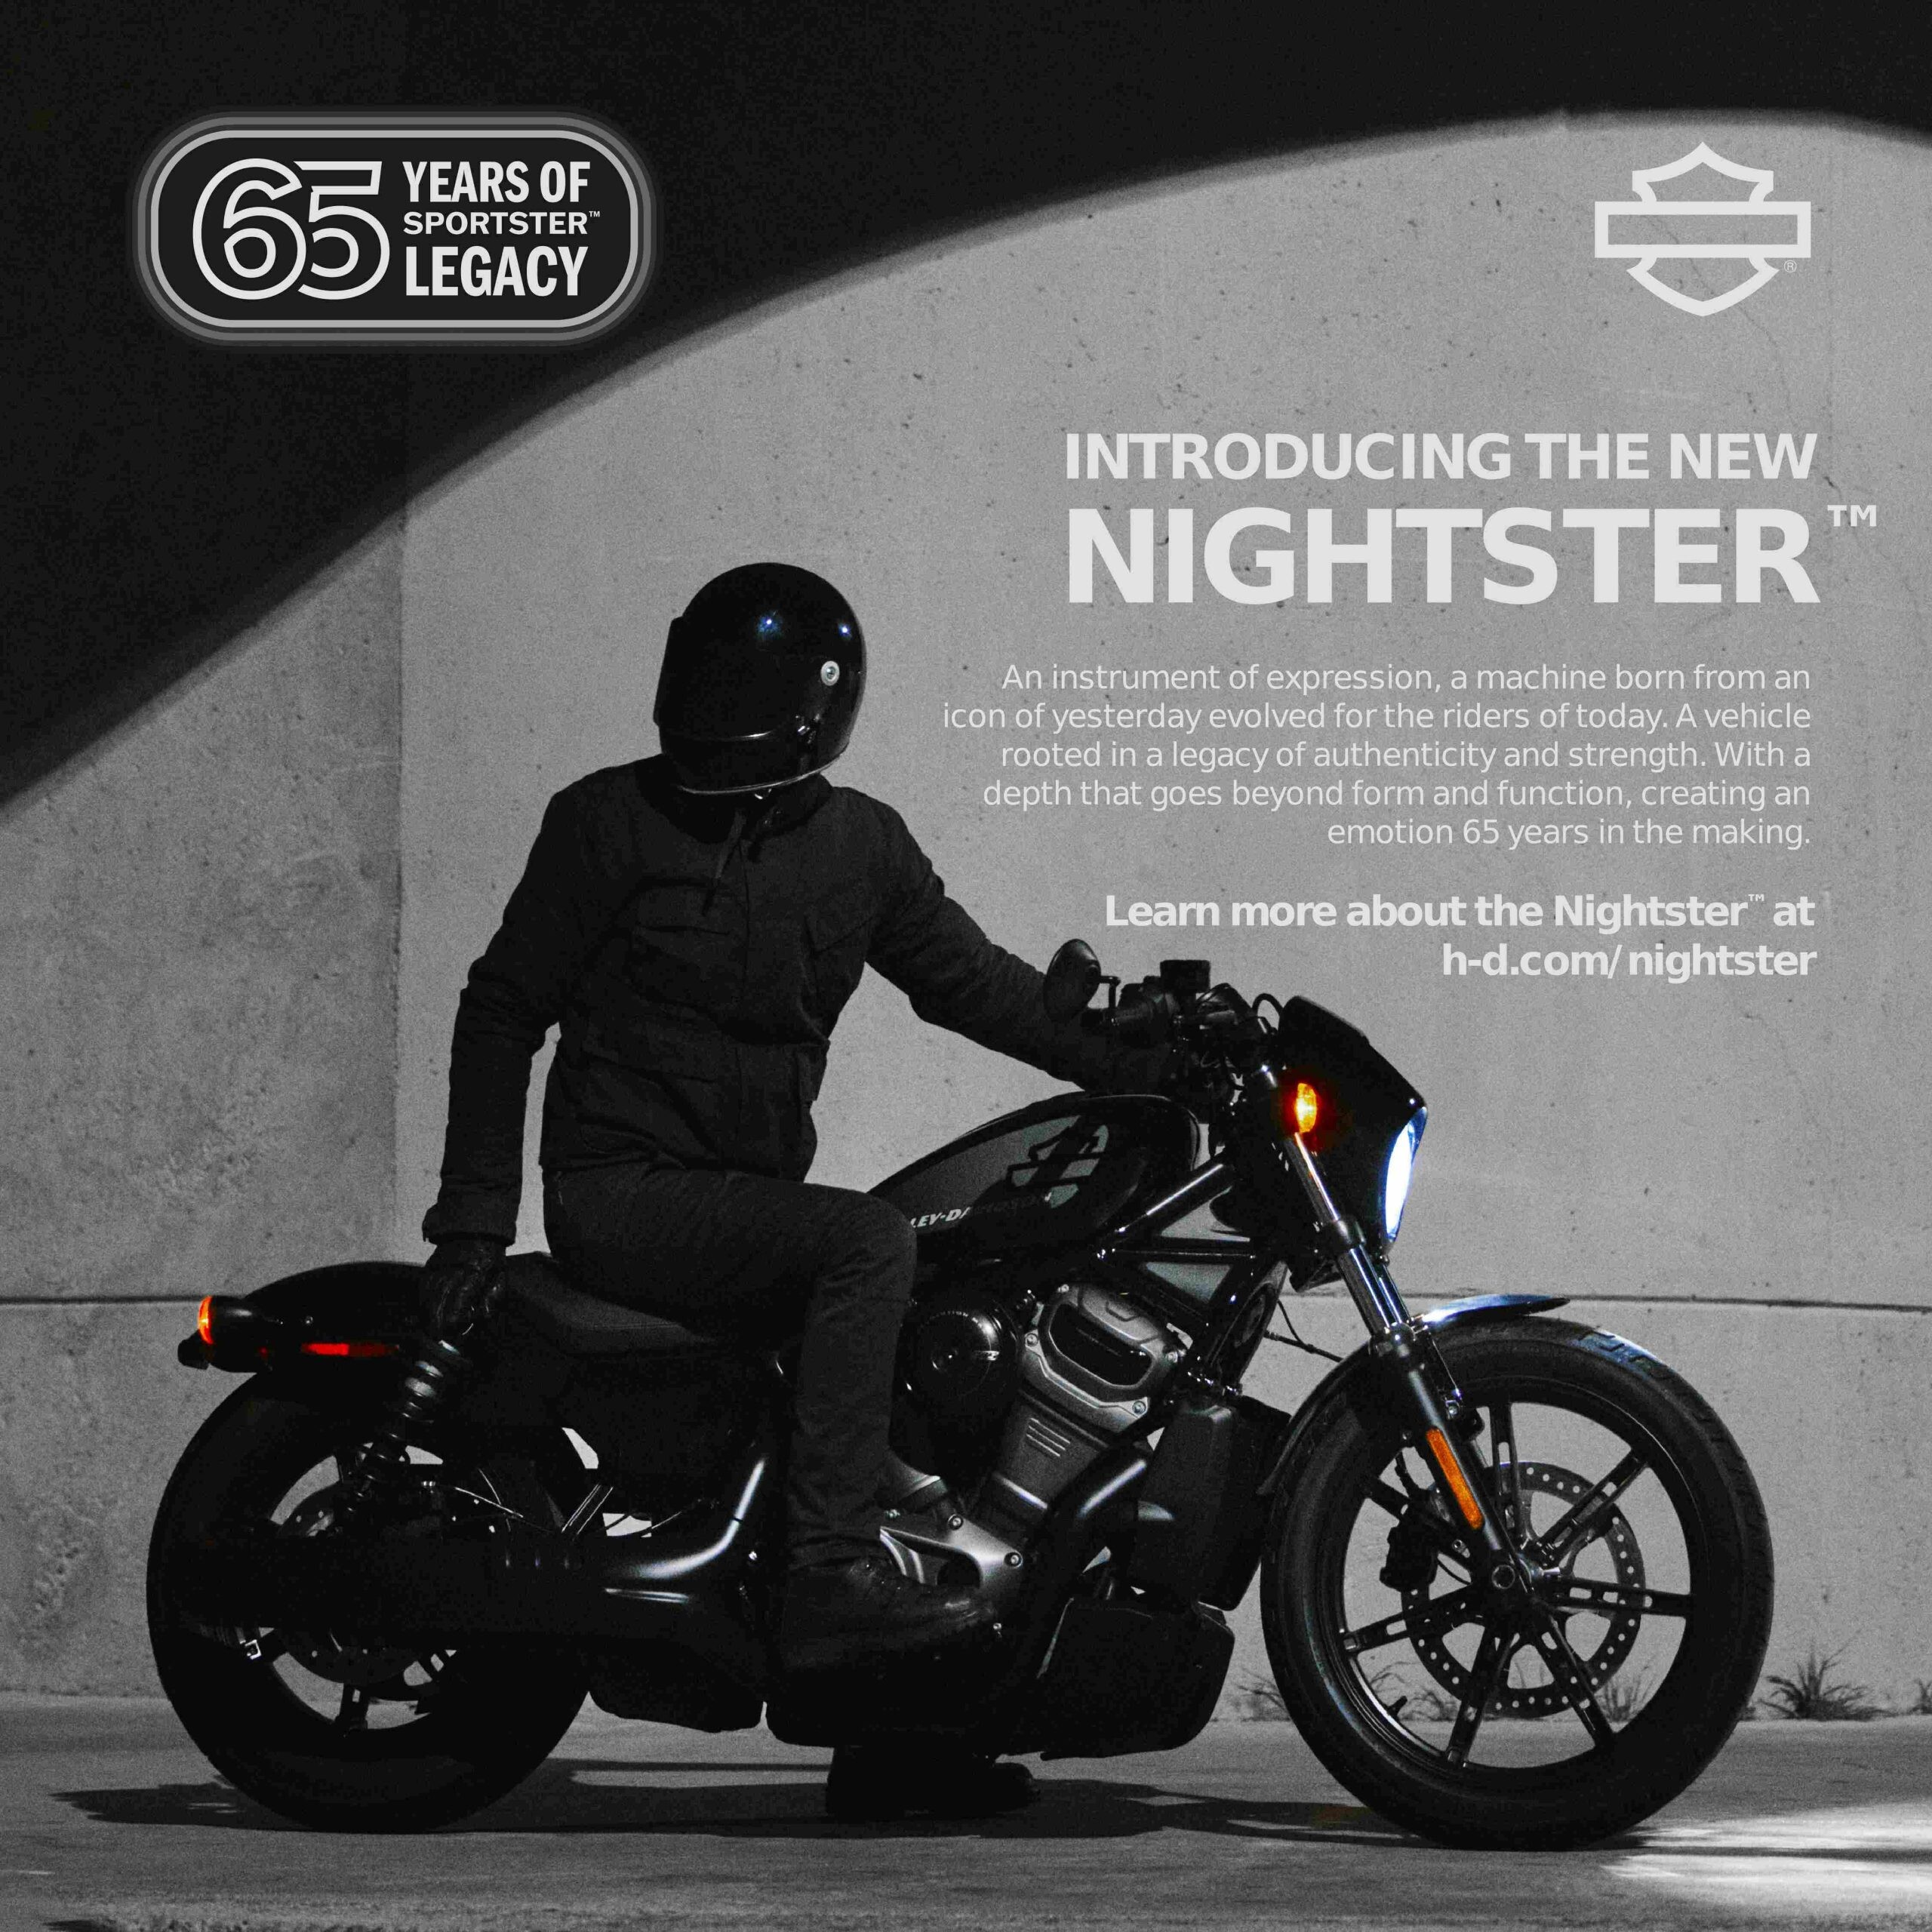 ยลโฉมรถมอเตอร์ไซค์รุ่น Nightster(TM) ปี 2022 ในวันที่ 7 พฤษภาคม นี้ ณ งาน Open House ที่ตัวแทนจำหน่ายอย่างเป็นทางการของ Harley-Davidson(R) ใกล้บ้านคุณ